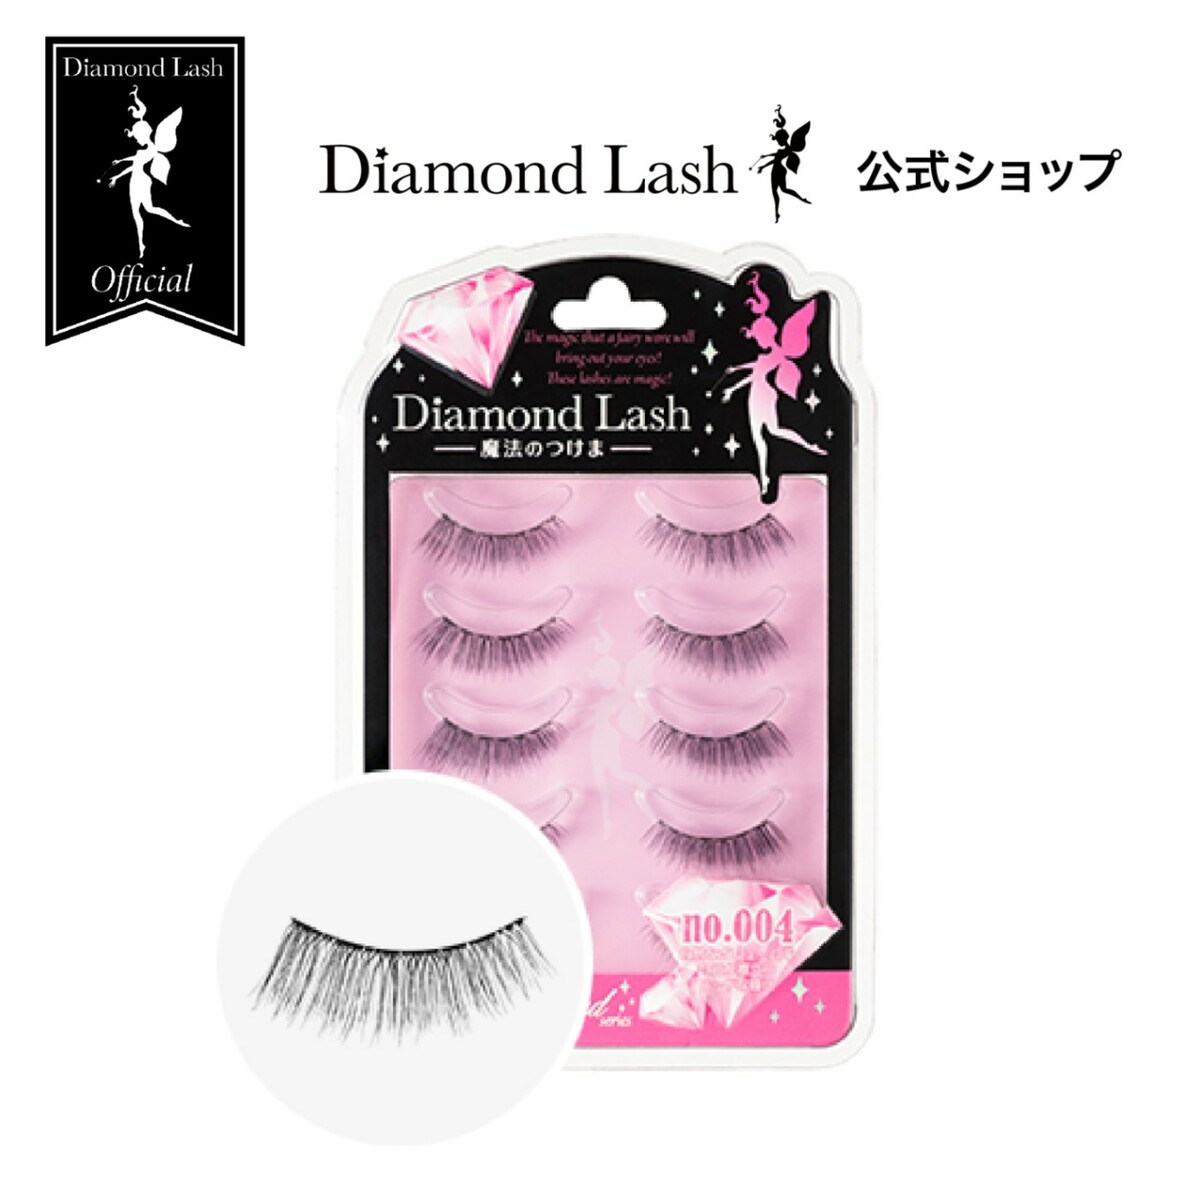 【ダイヤモンドラッシュ公式】 DiamondLash Pink Diamond series 【no.004】自然なボリューム感で目元が際立つモードな瞳に つけまつげ